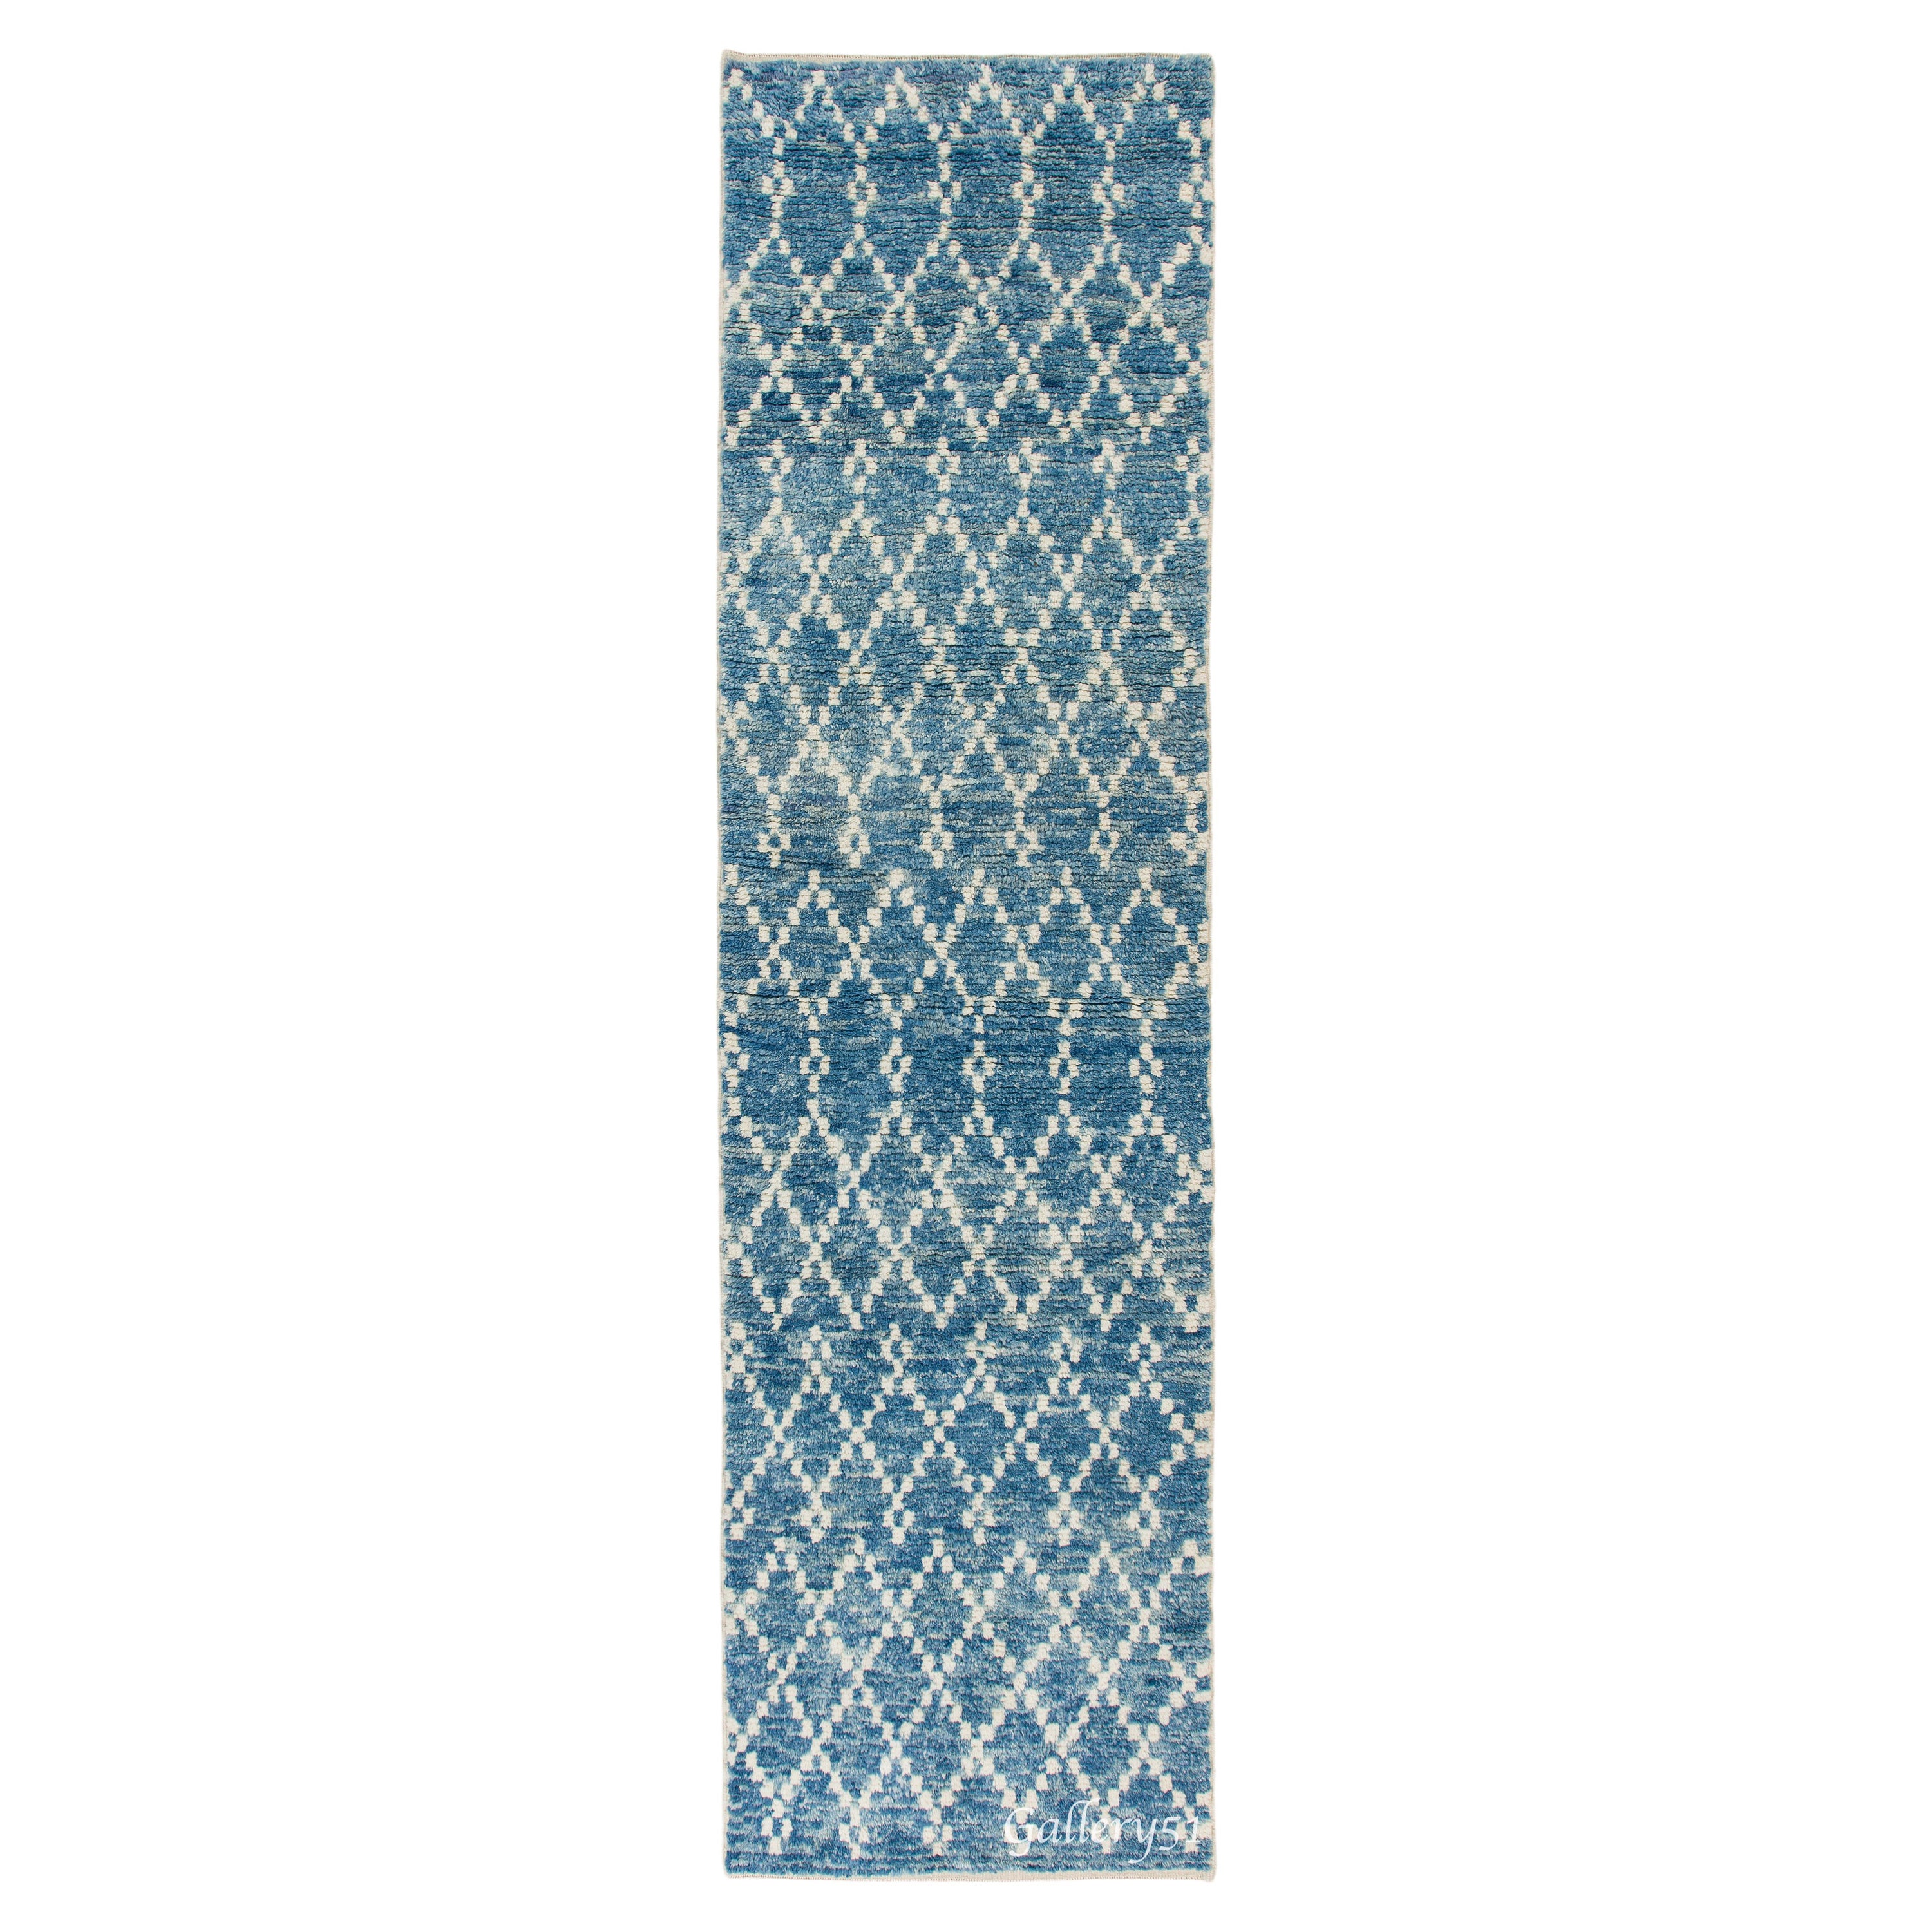 3.8x13.8 ft Modern Moroccan Runner Rug in Light Blue. Handmade Corridor Carpet For Sale